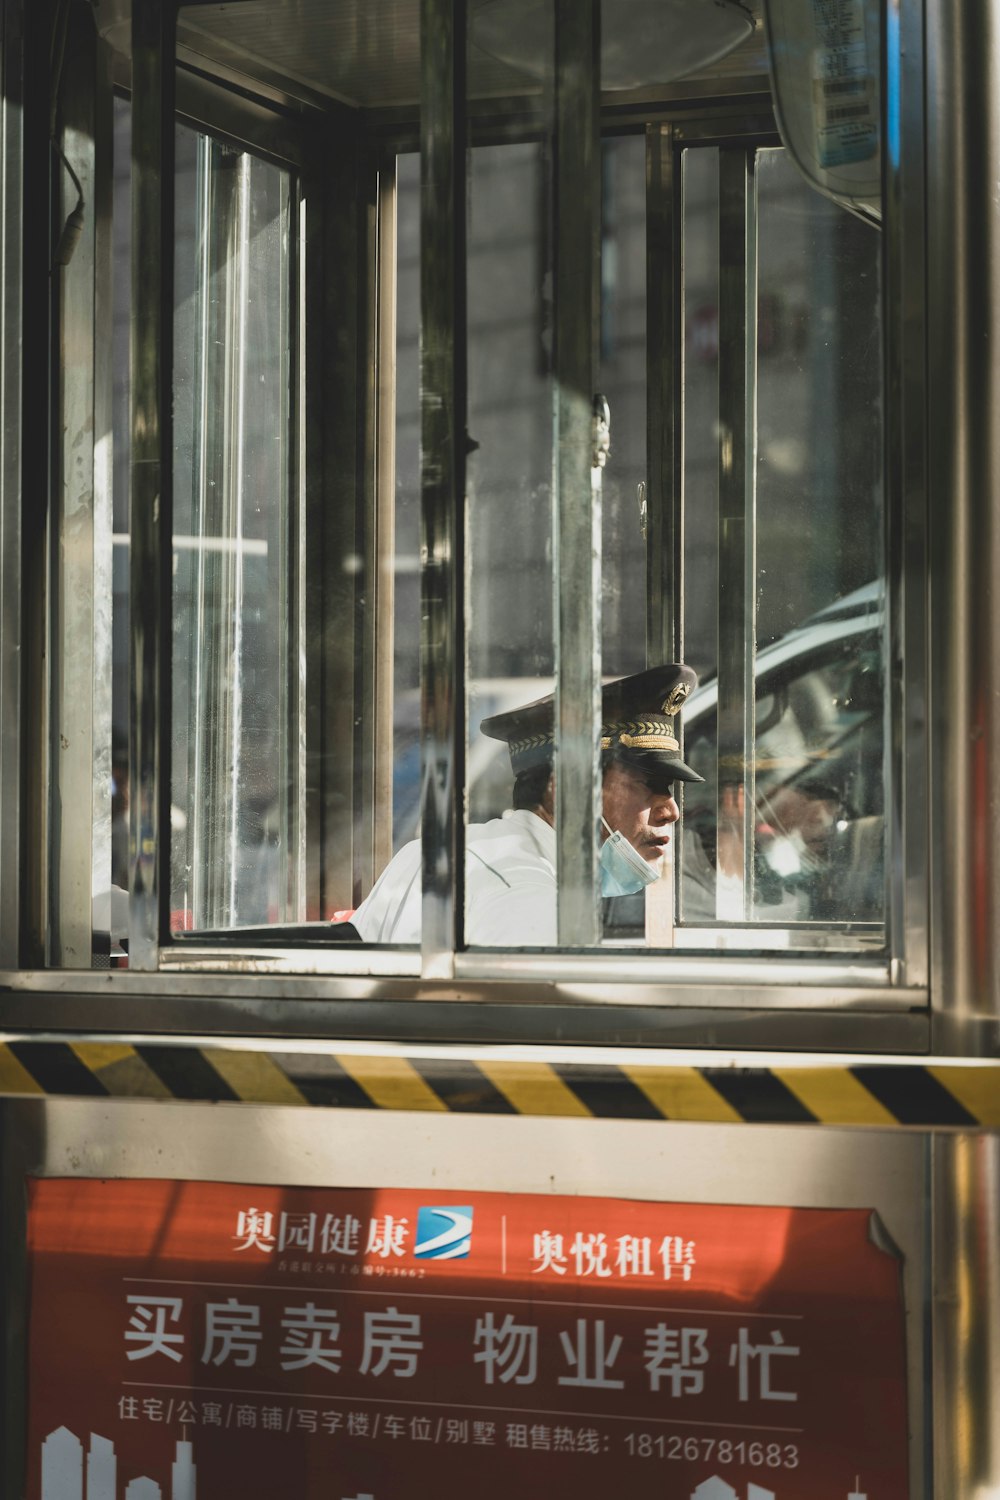 Un homme en uniforme de police regardant par une fenêtre